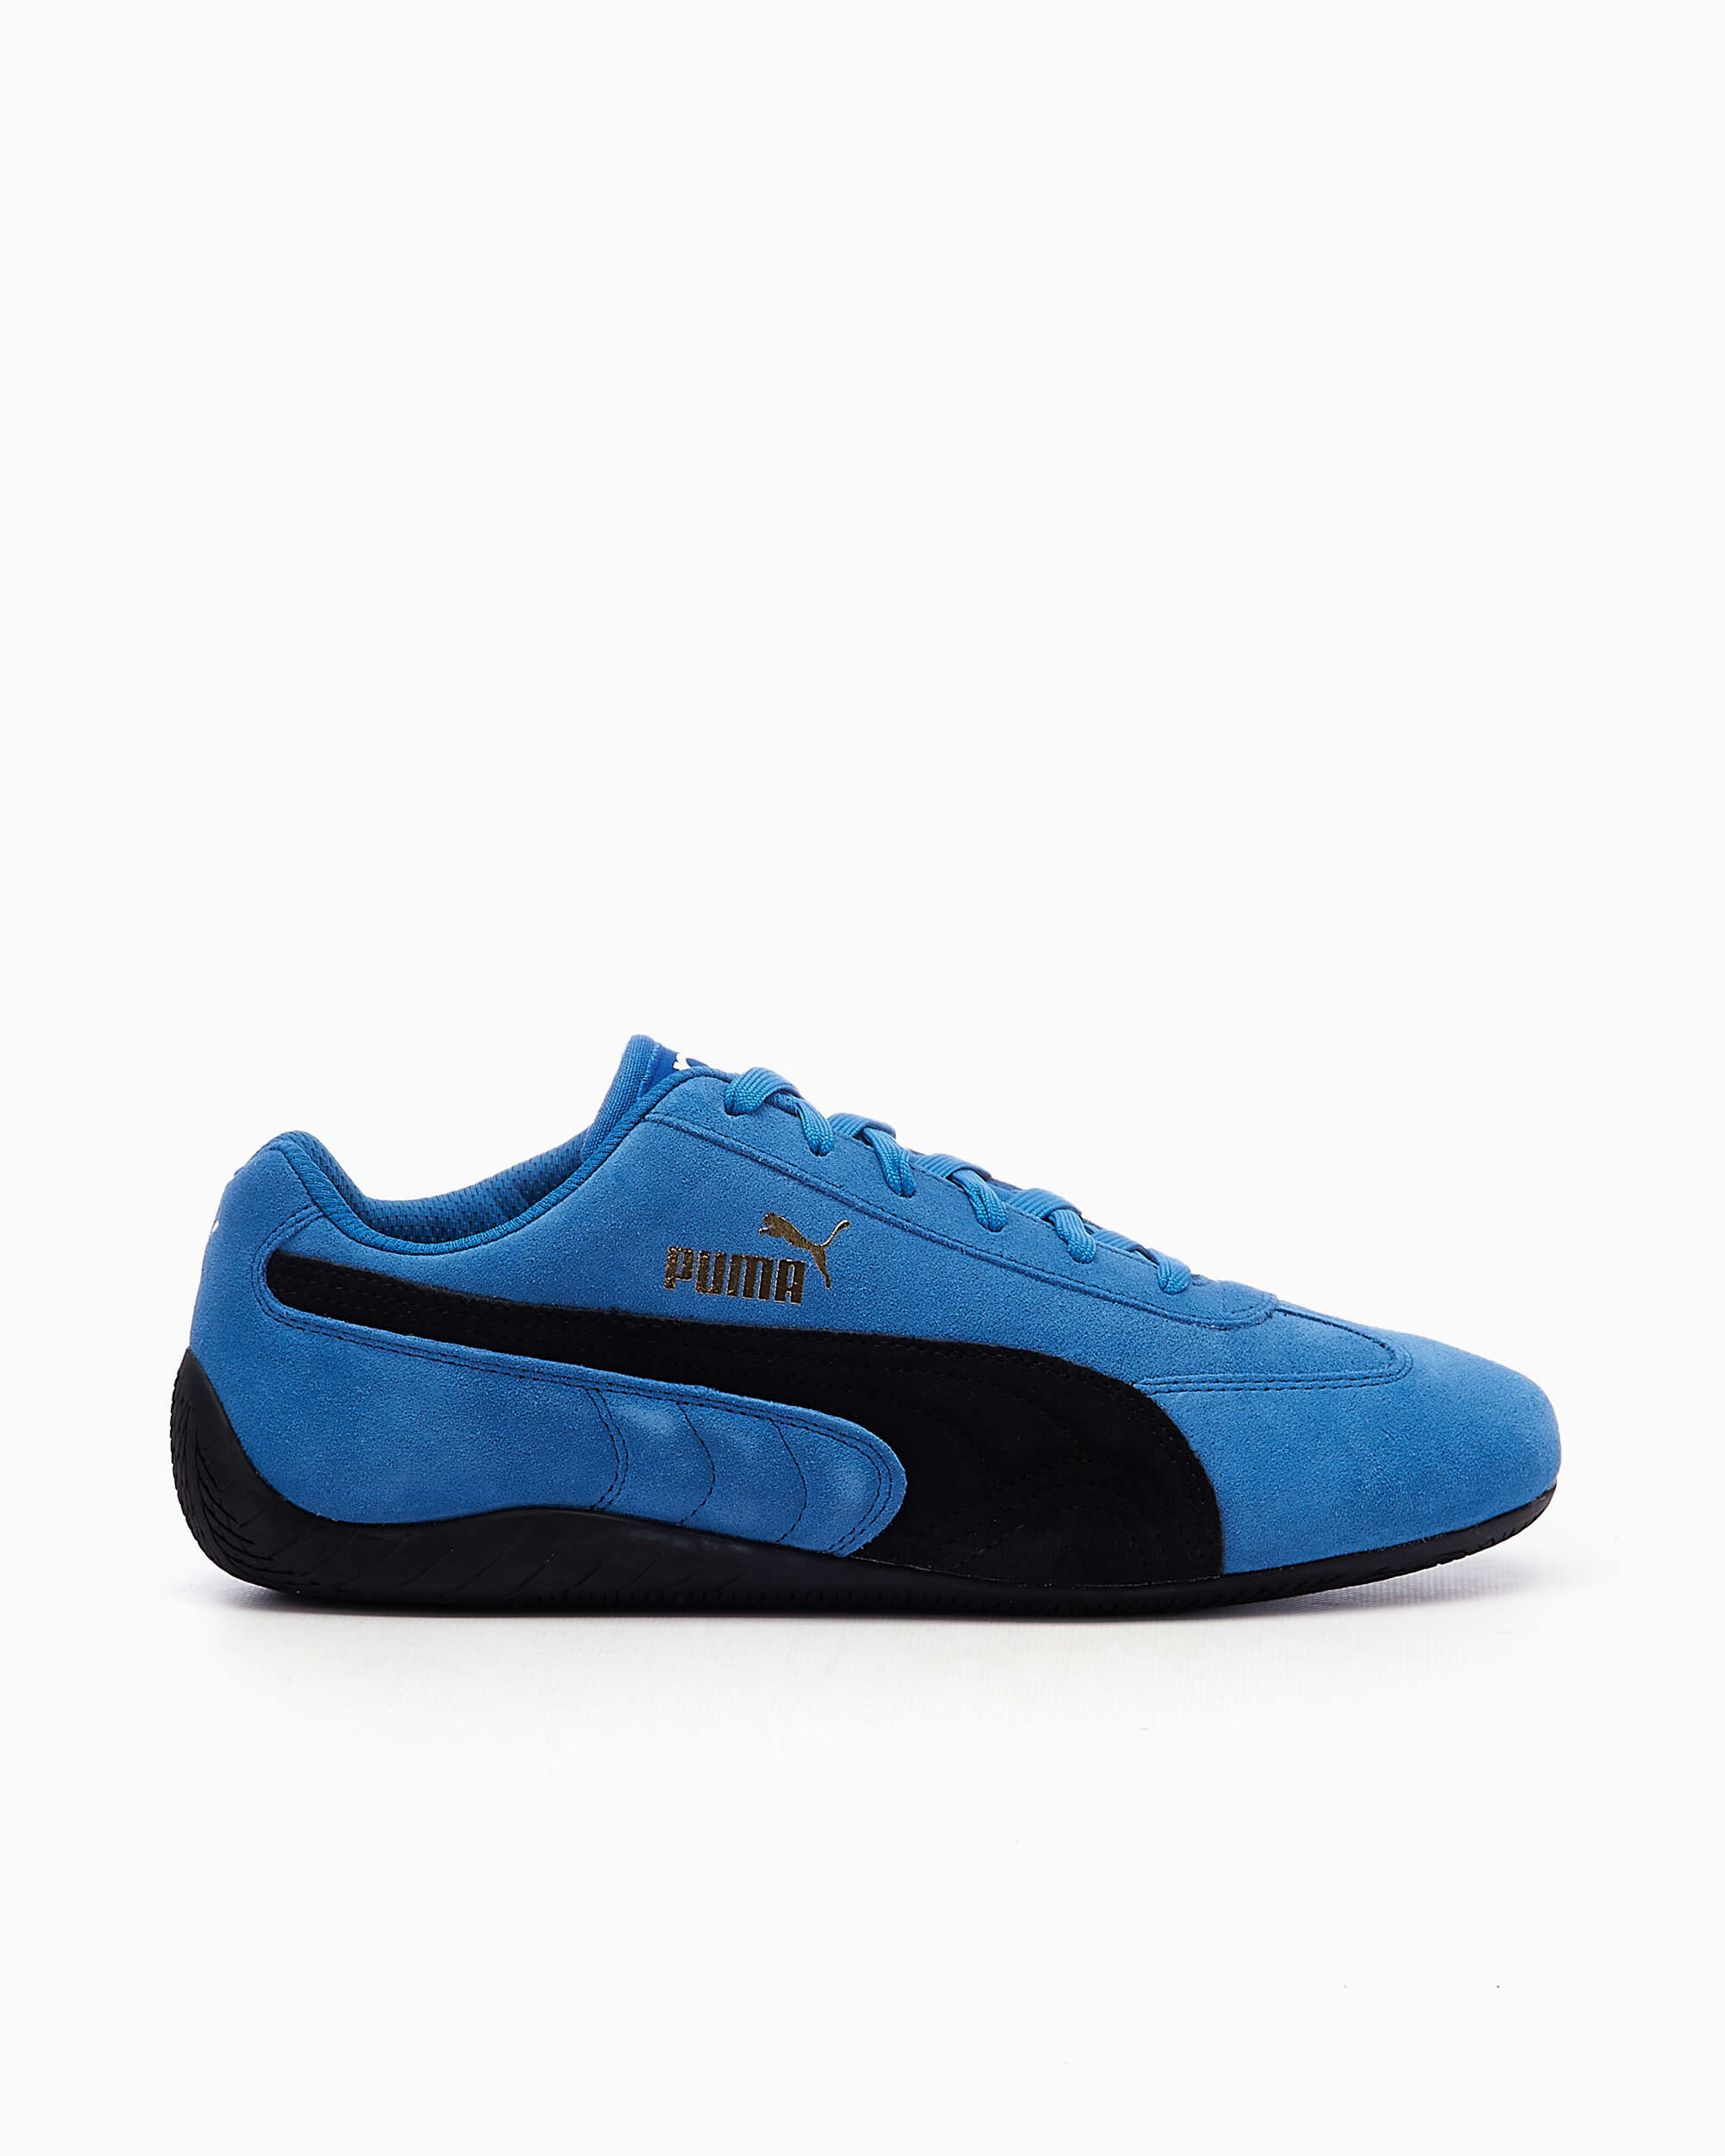 Puma Speedcat OG Sparco Blue |306725-02| Buy Online at FOOTDISTRICT